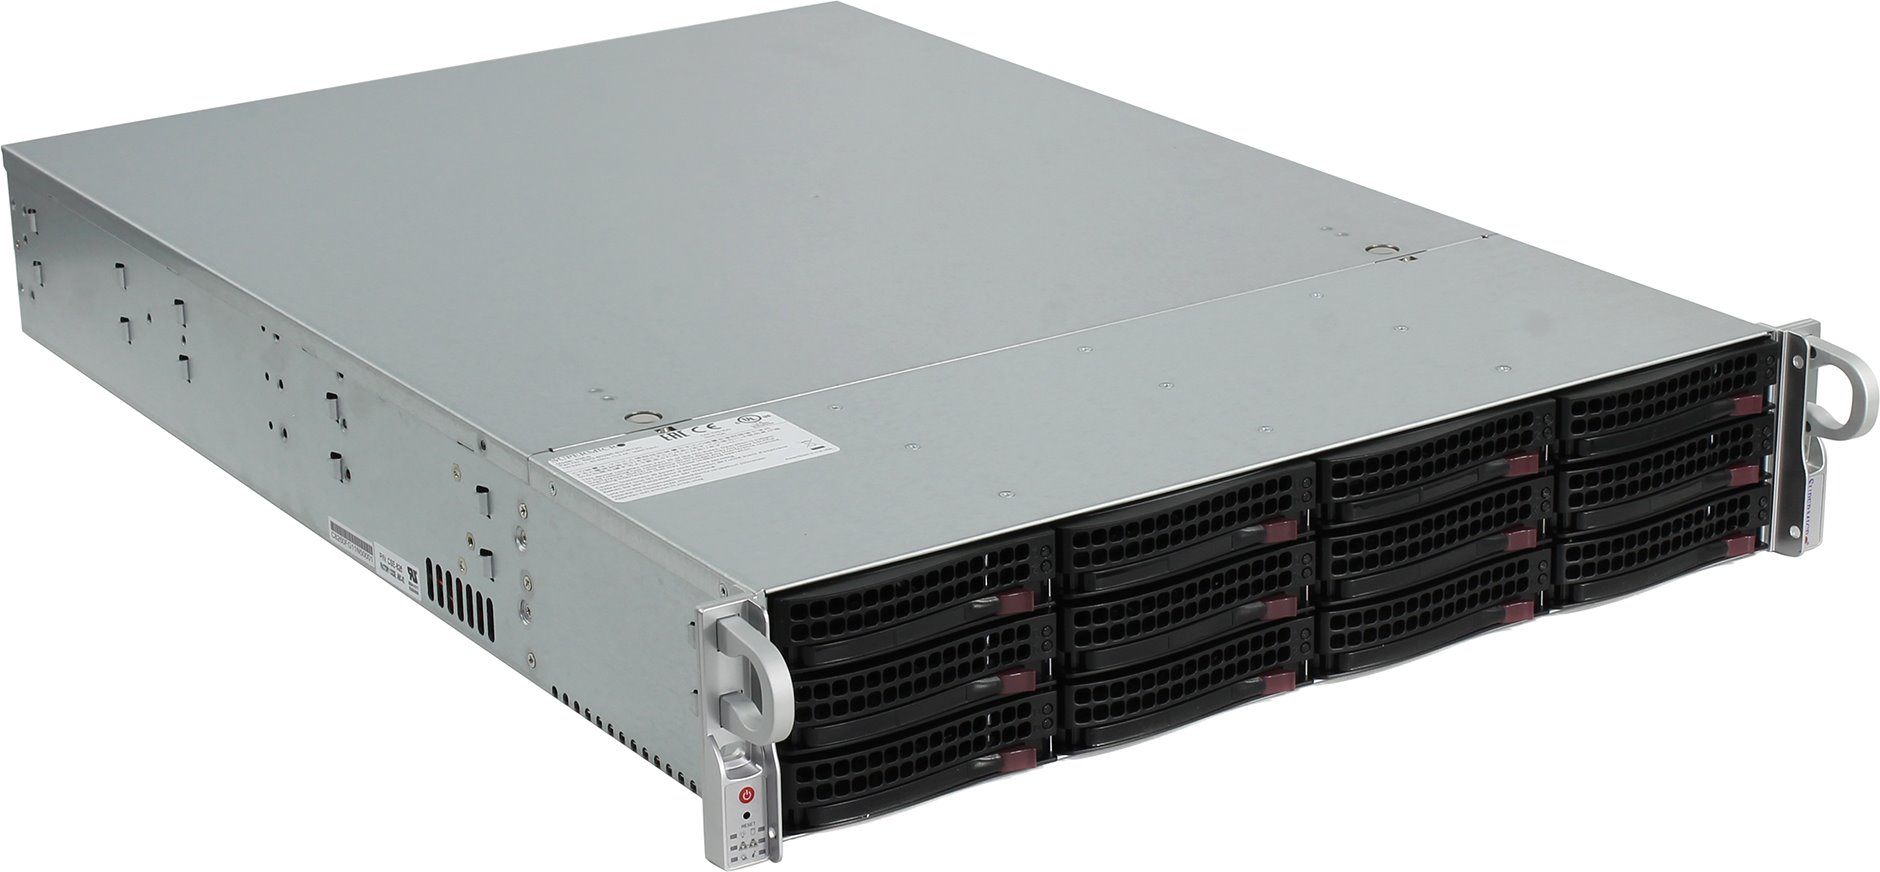 Серверная платформа SuperMicro SSG-6028R-E1CR16T, 2U, 2 x LGA2011-3, Intel C612, 16 x DDR4, 16 x 3.5" SAS, 2x10 Gigabit Ethernet (10 Гбит/с), 1000 Вт